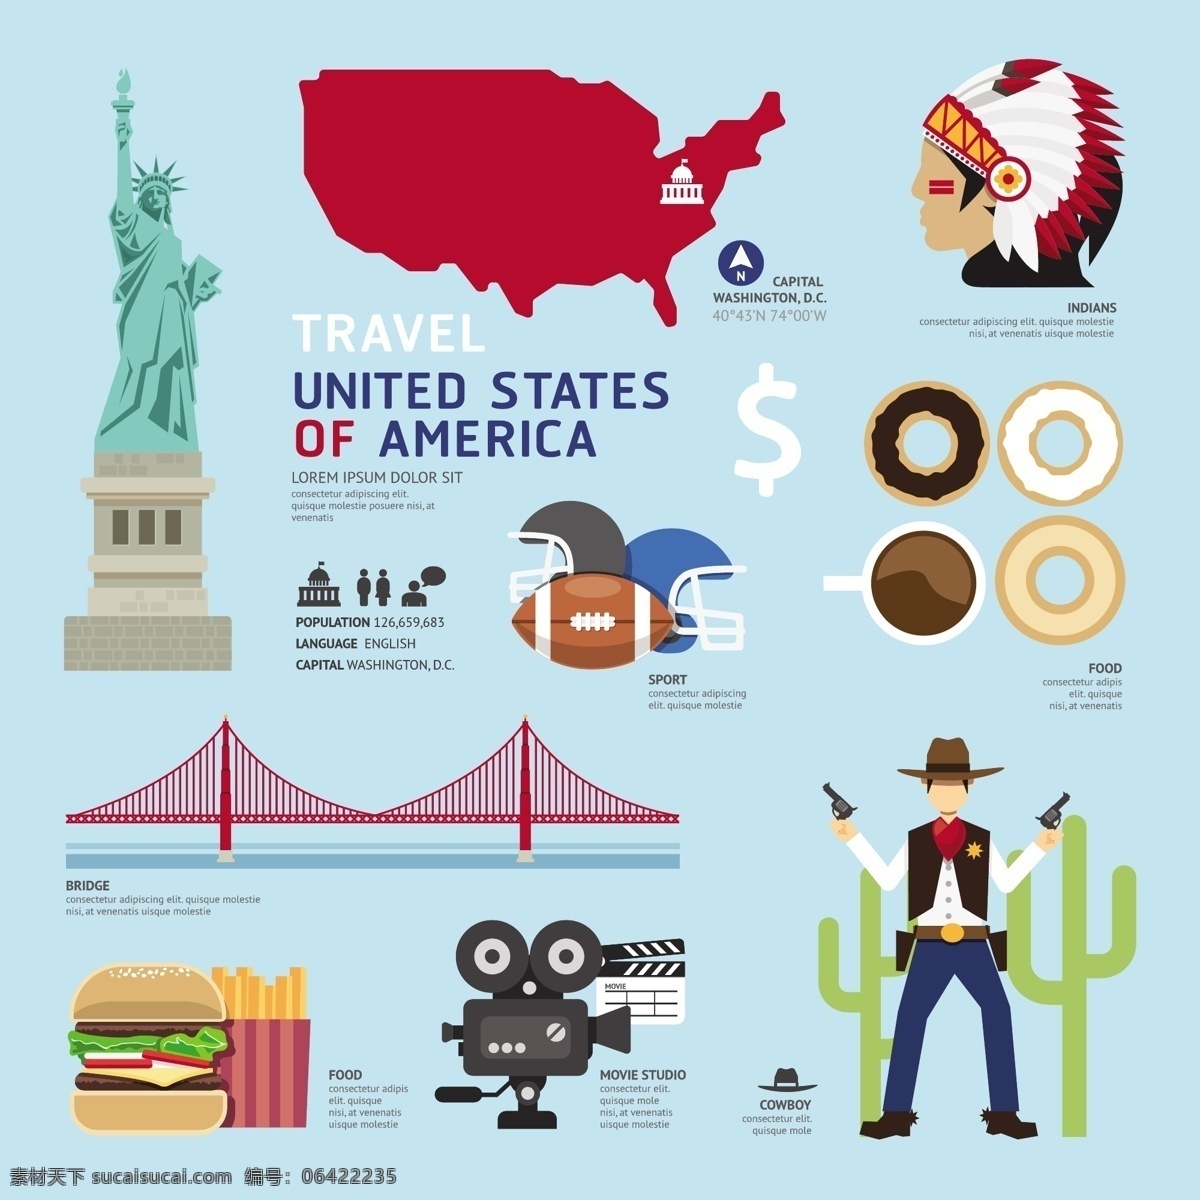 旅游文化 美国文化 扁平化 地标 汉堡 薯条 文化 西部 自由女神 印第安人 矢量图